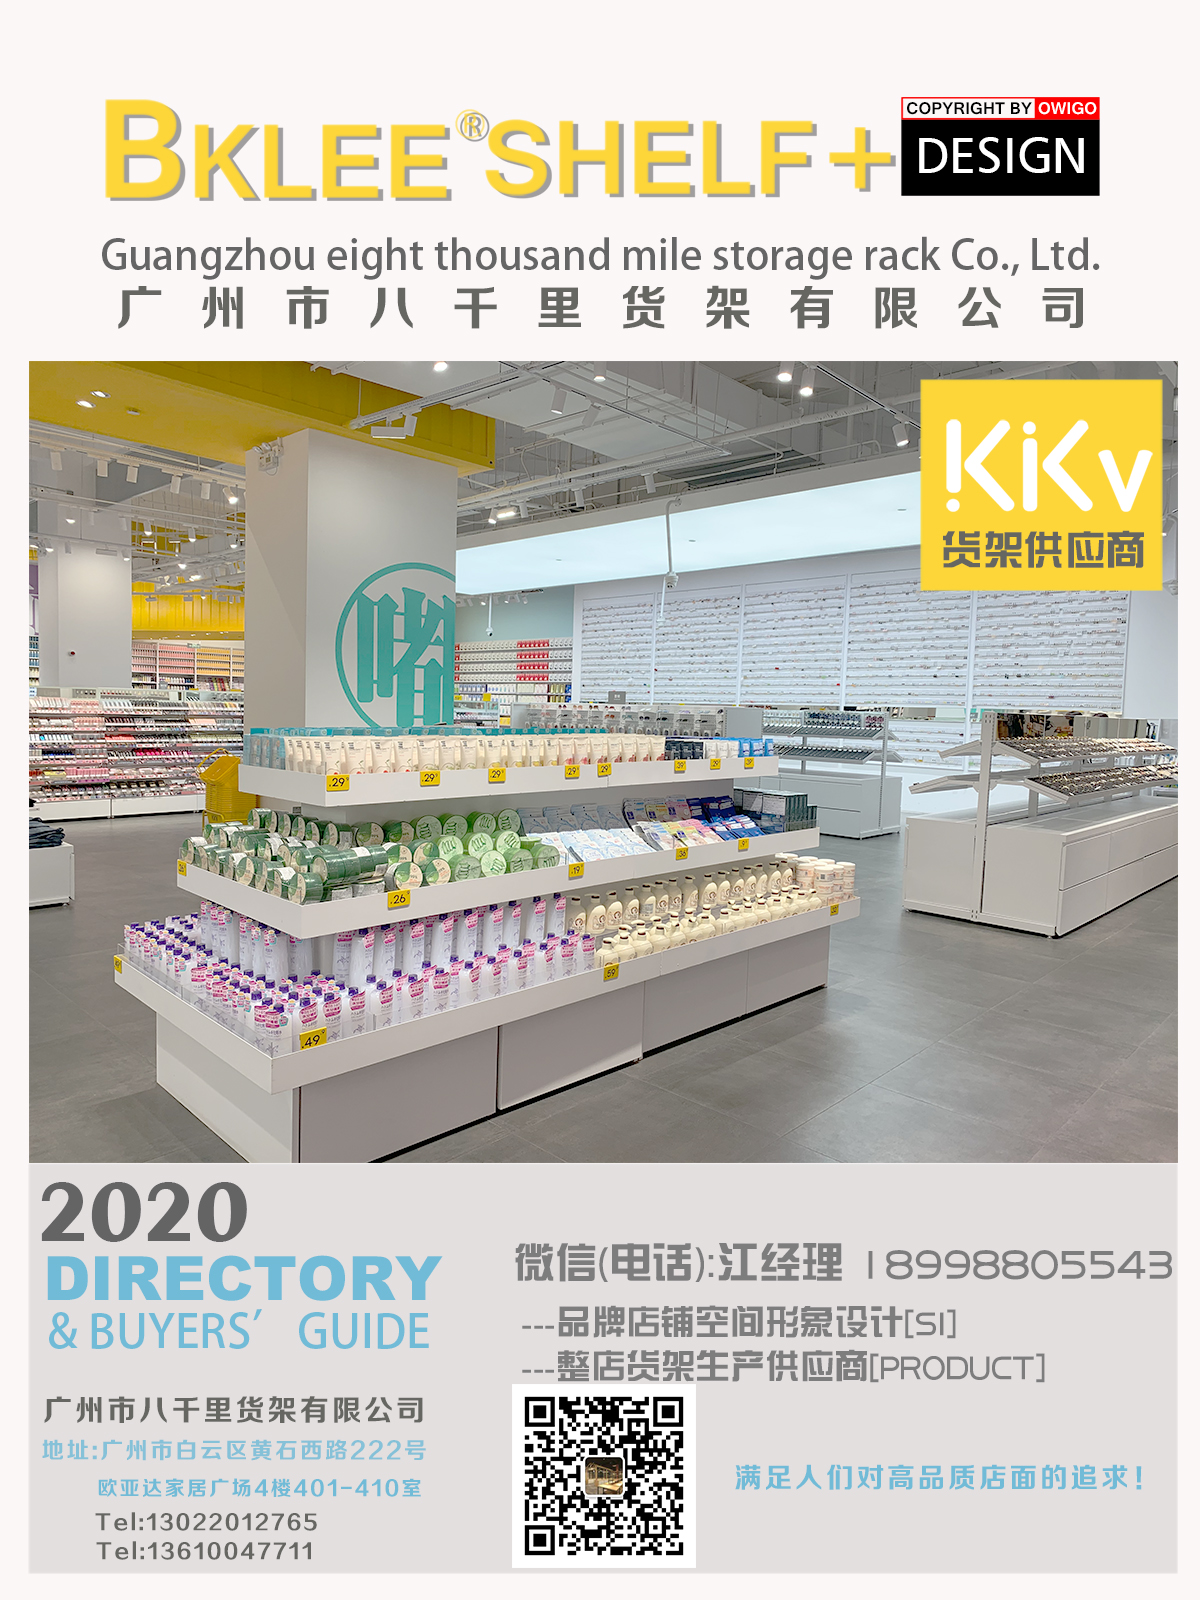 广州快时尚KKV货架设计定制 整店形象道具输出 kkv货架生产，店面形象设计图片